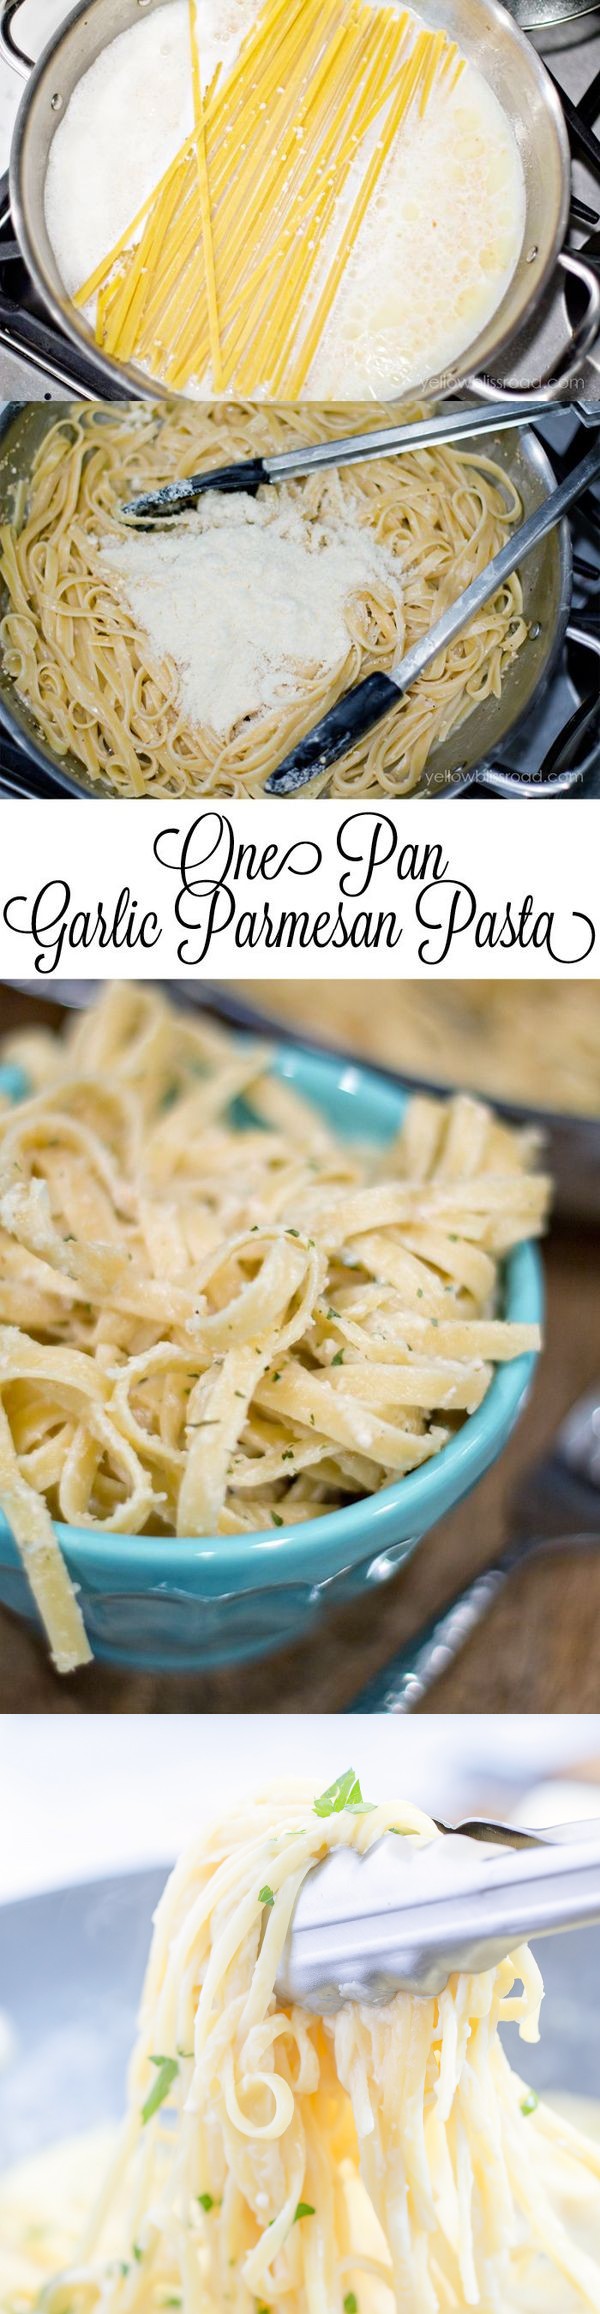 One Pan Garlic Parmesan Pasta